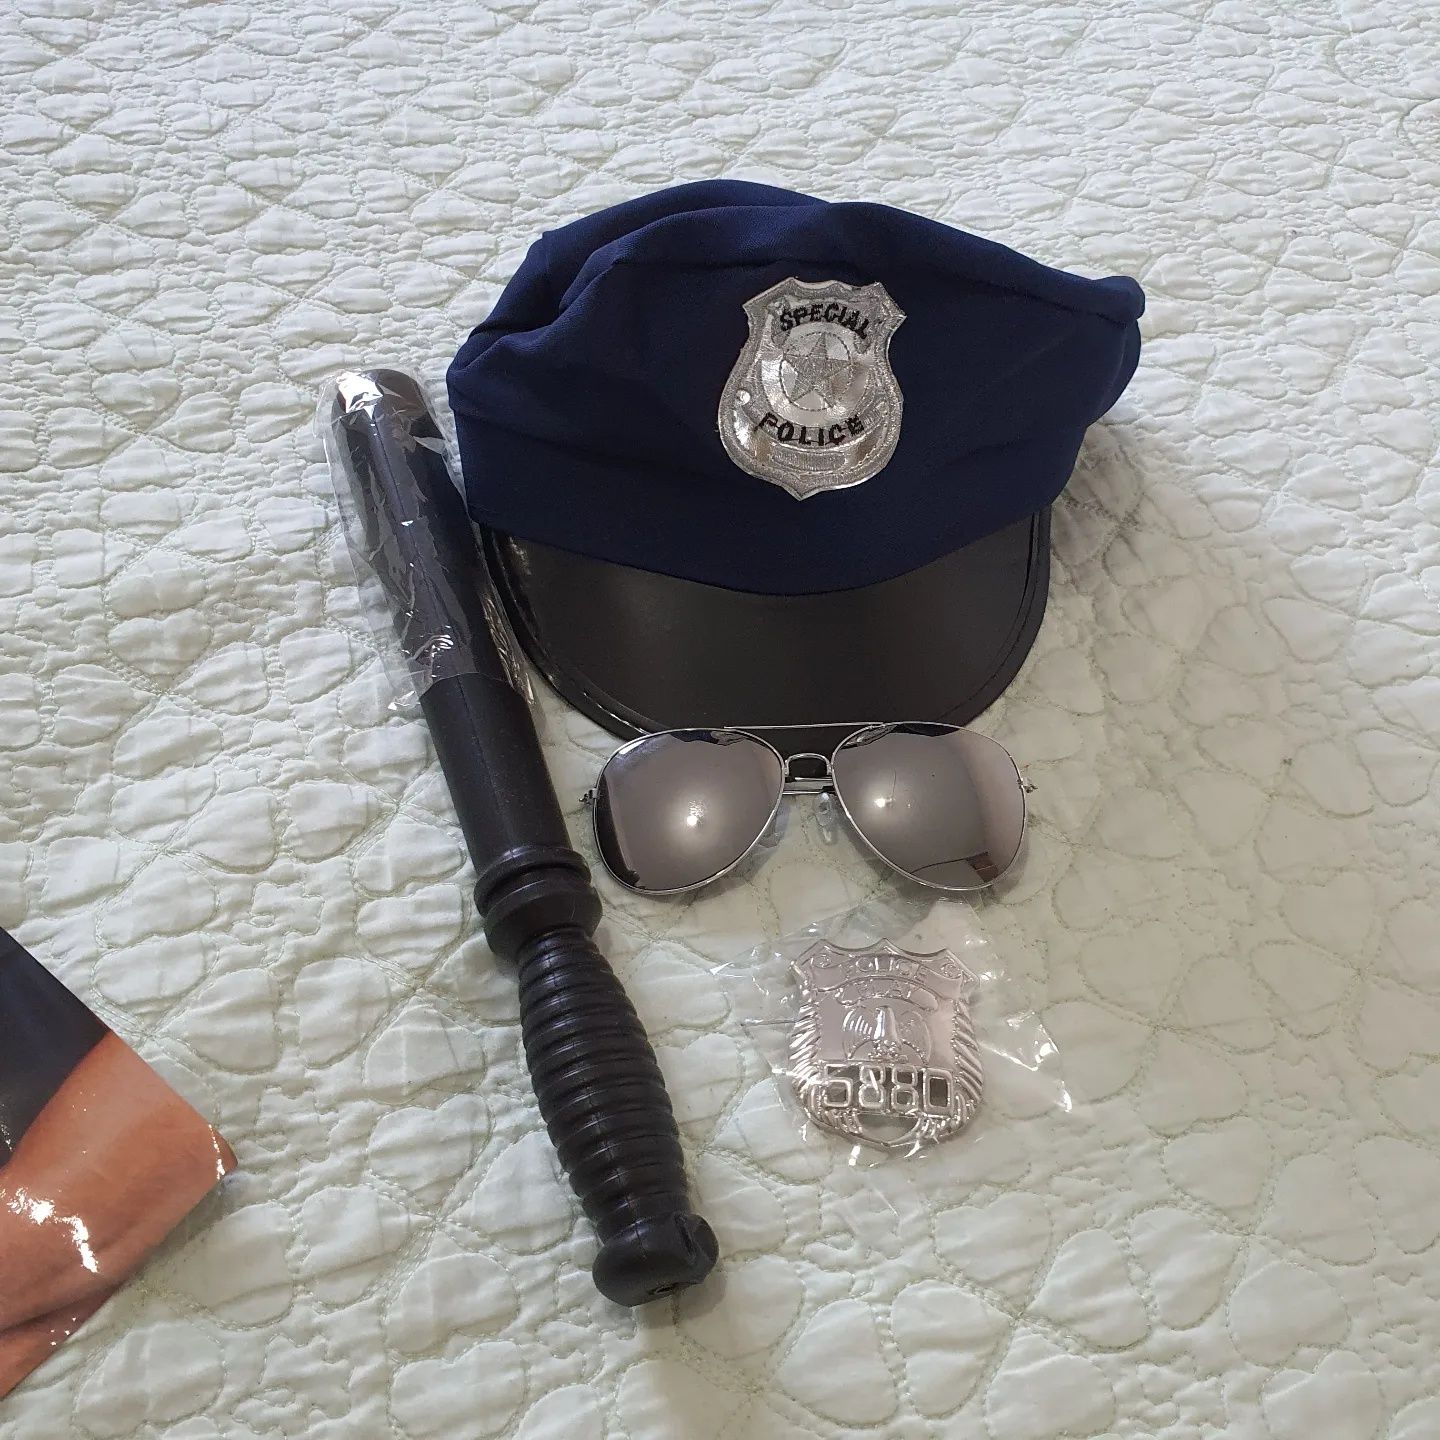 Set de poliție pentru costume, accesorii pentru carnaval, palărie, och